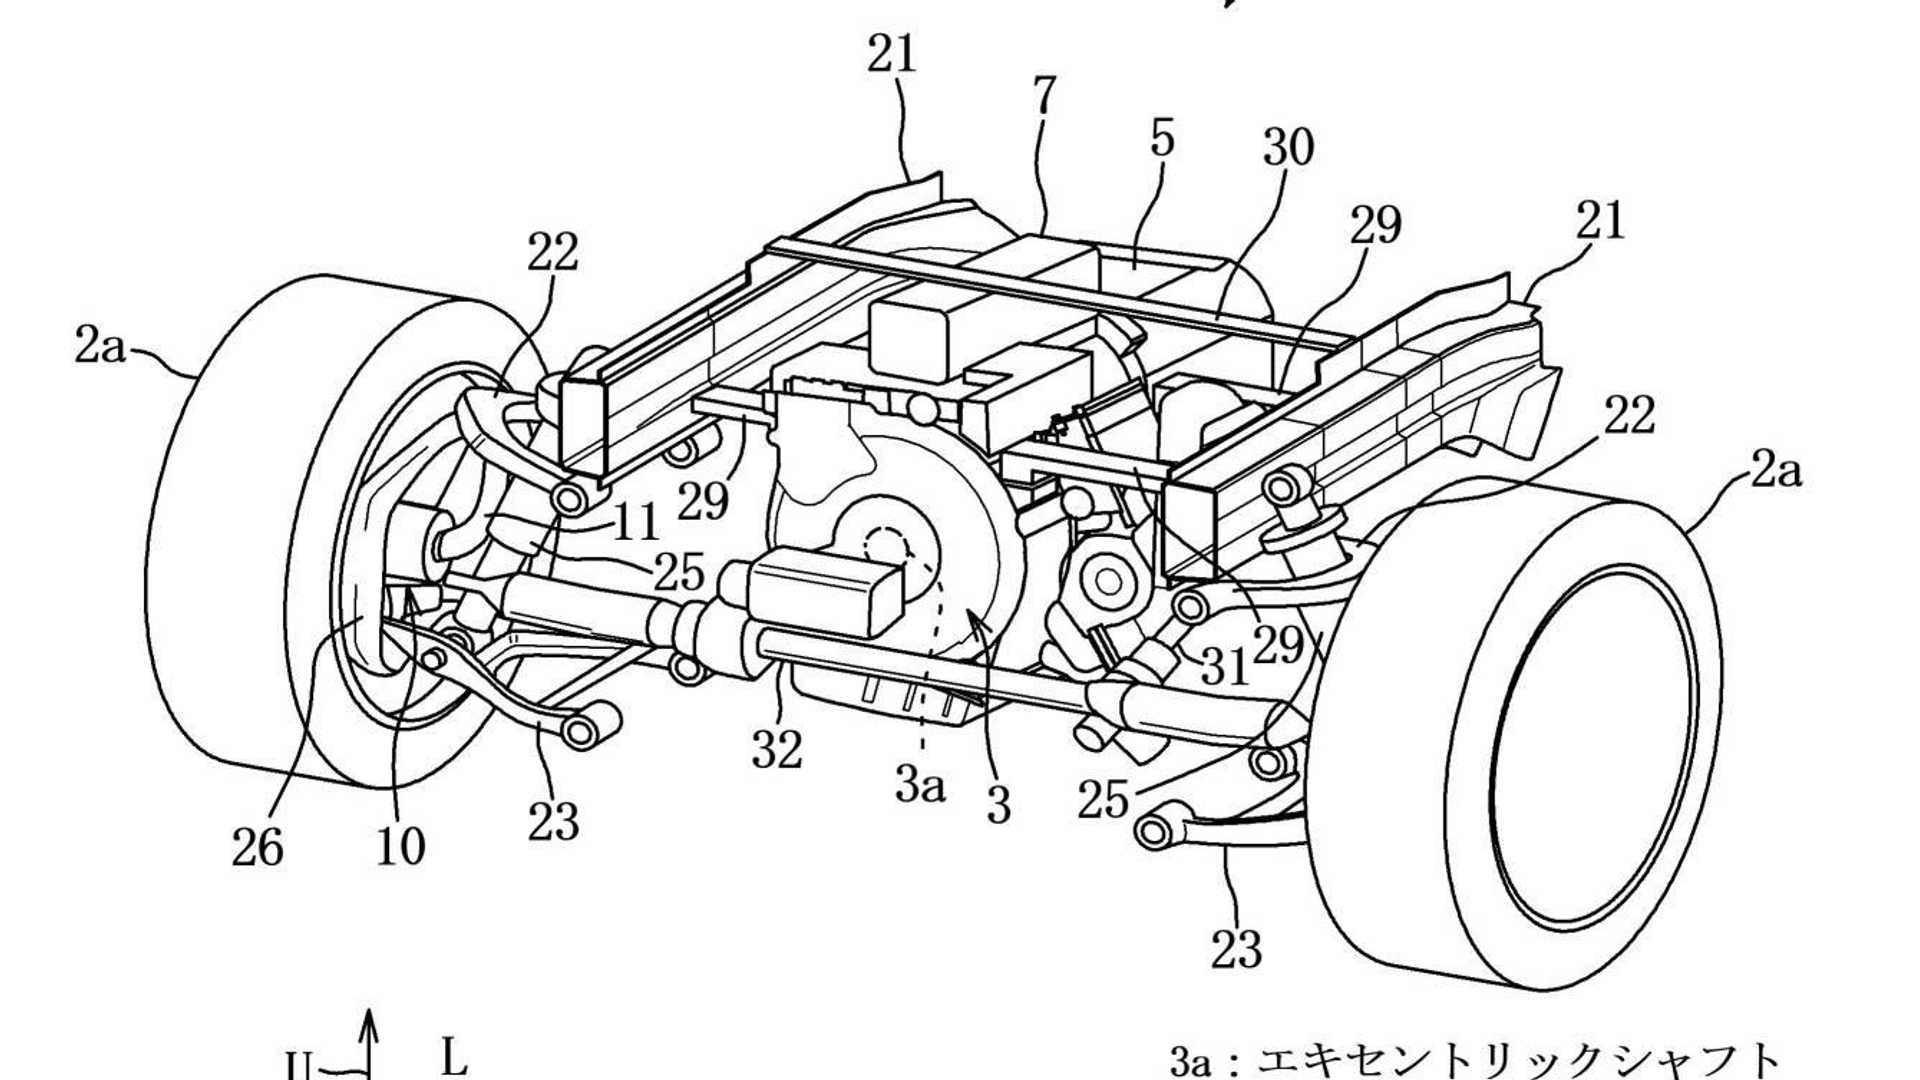 patente Mazda hibrido motor rotativo bateria supercondensador_03